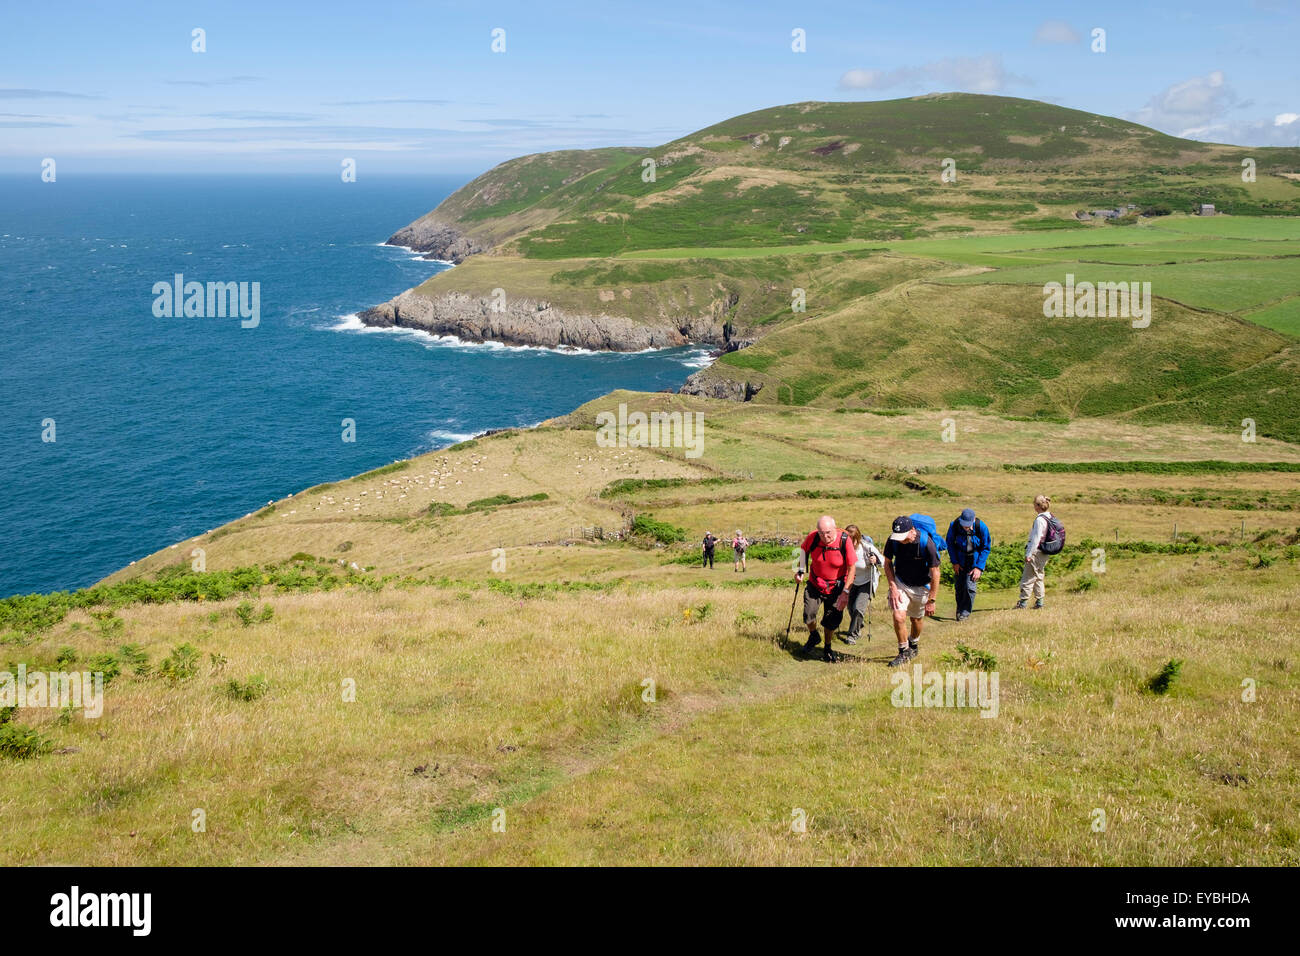 Groupe de randonneurs marche sur chemin de la côte du Pays de Galles péninsule Llyen Llanllawen Porth / Pen Llyn Gwynedd au nord du Pays de Galles Royaume-uni Grande-Bretagne Banque D'Images